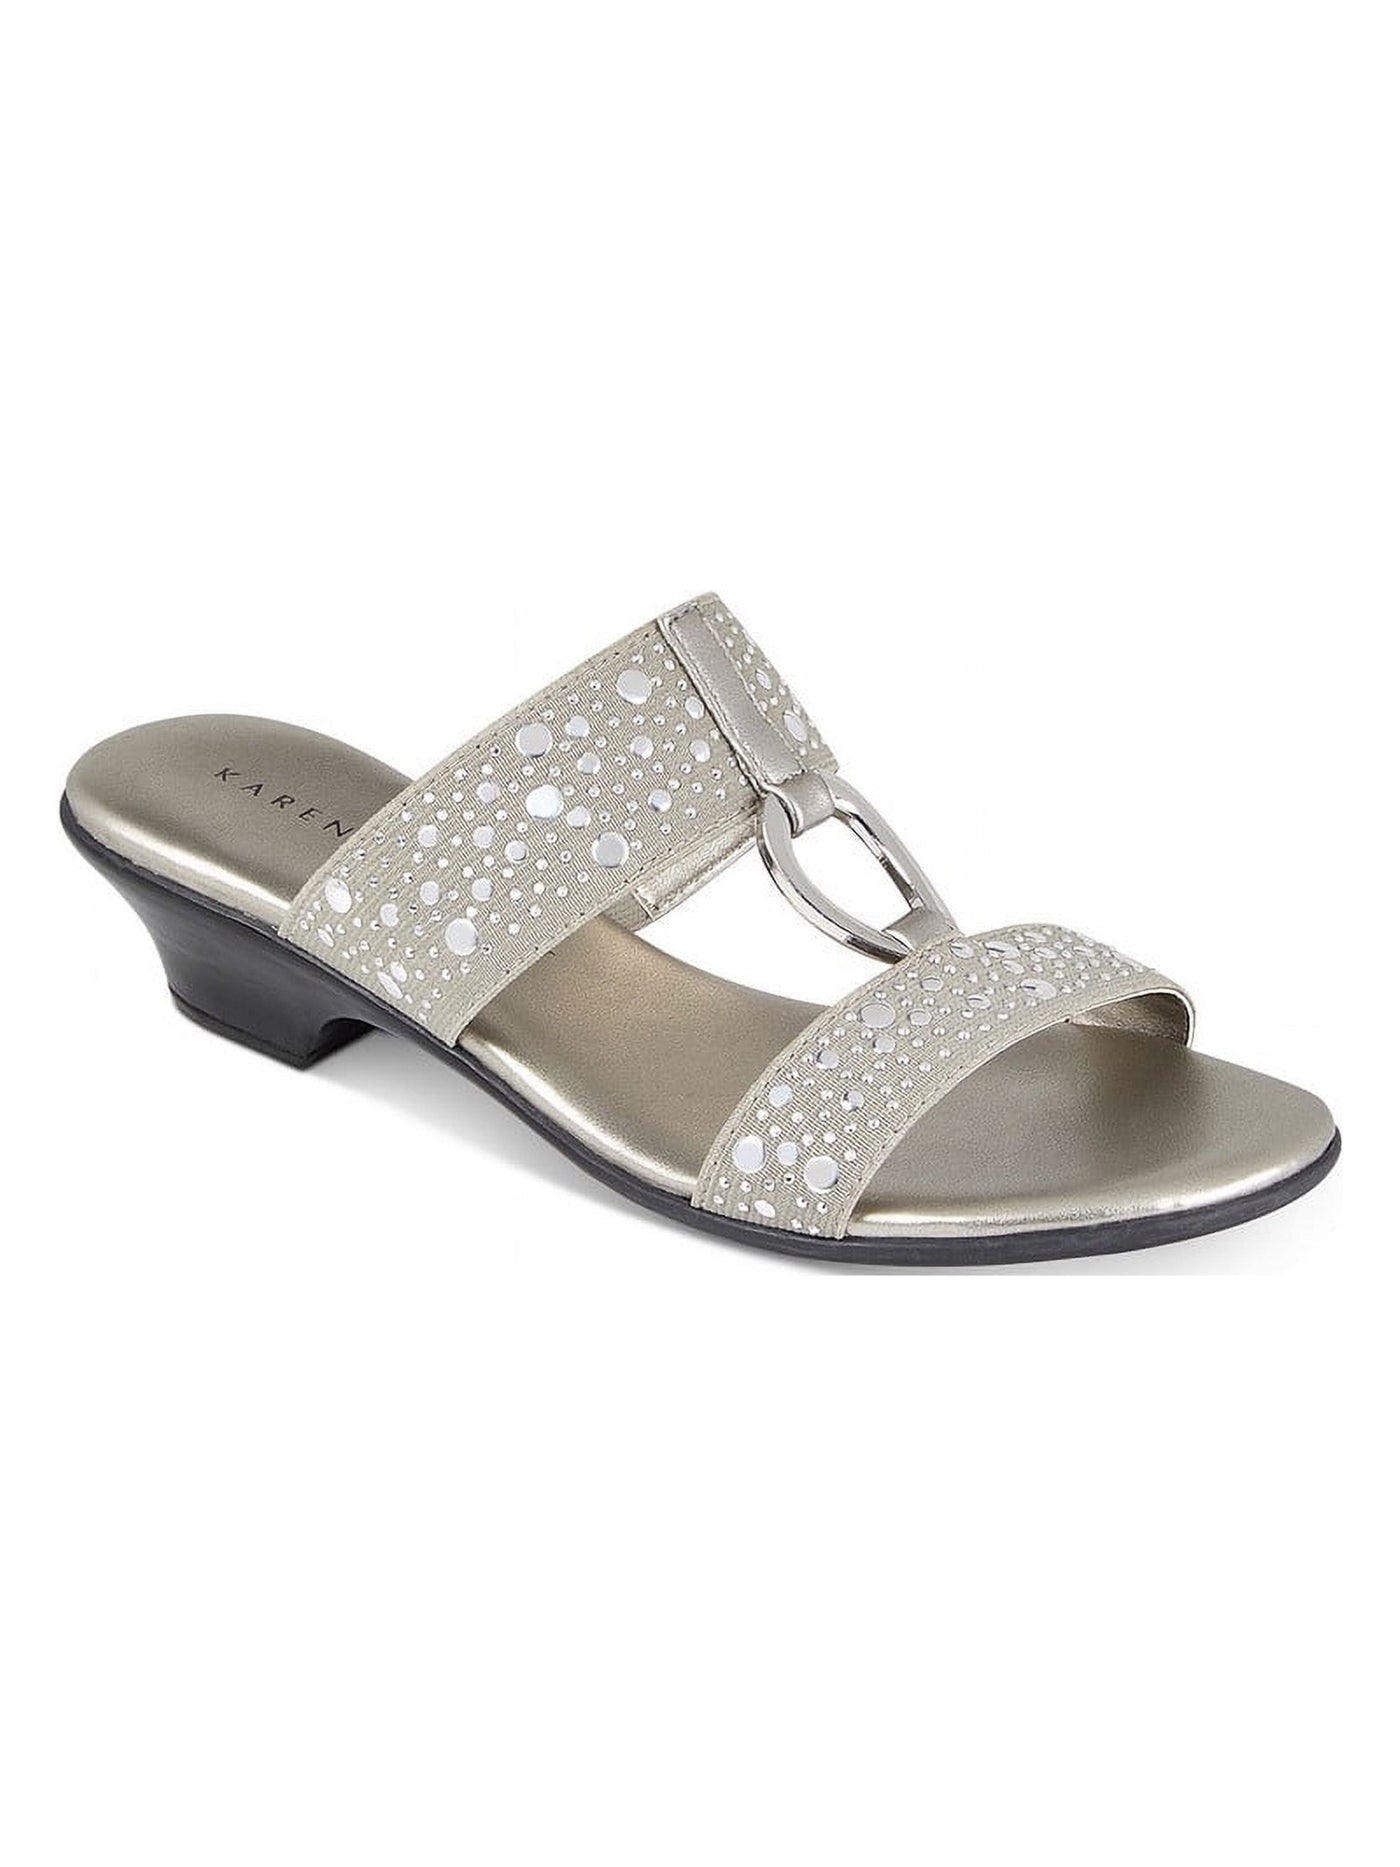 KAREN SCOTT Womens Silver Goring Studded Padded Eanna Round Toe Block Heel Slip On Dress Sandals Shoes 9.5 W